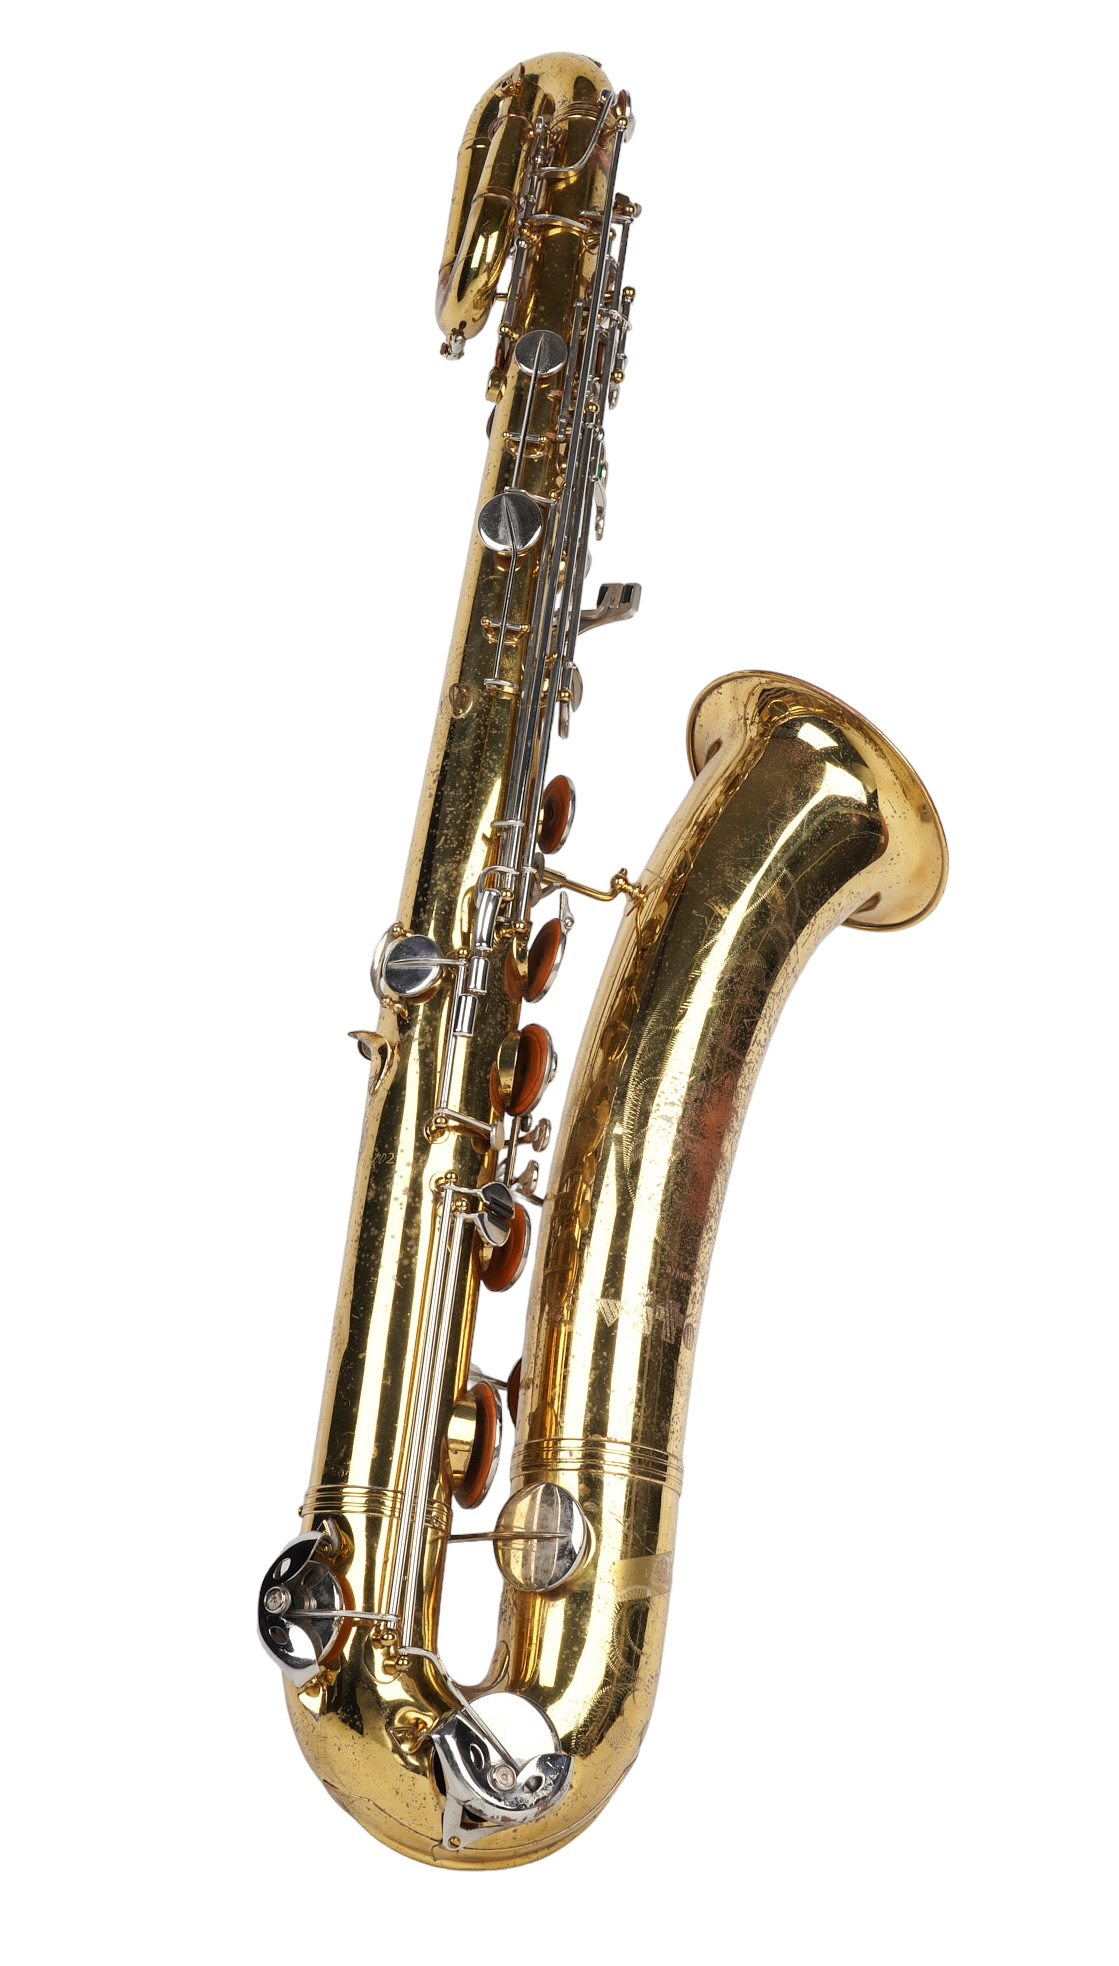 Vito baritone saxophone serial 2e22a1